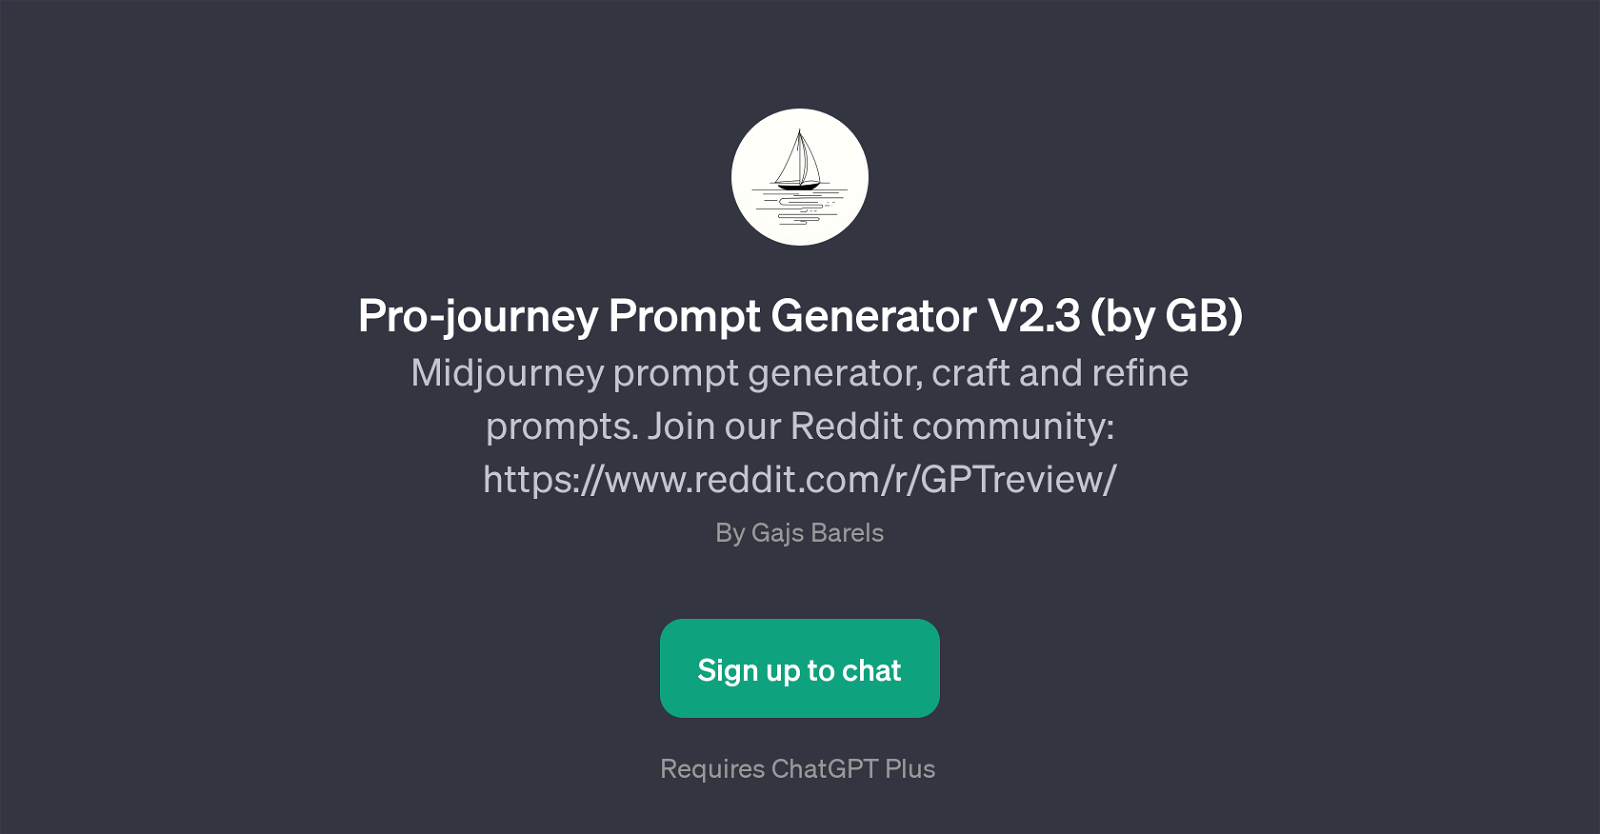 Pro-journey Prompt Generator V2.3 website